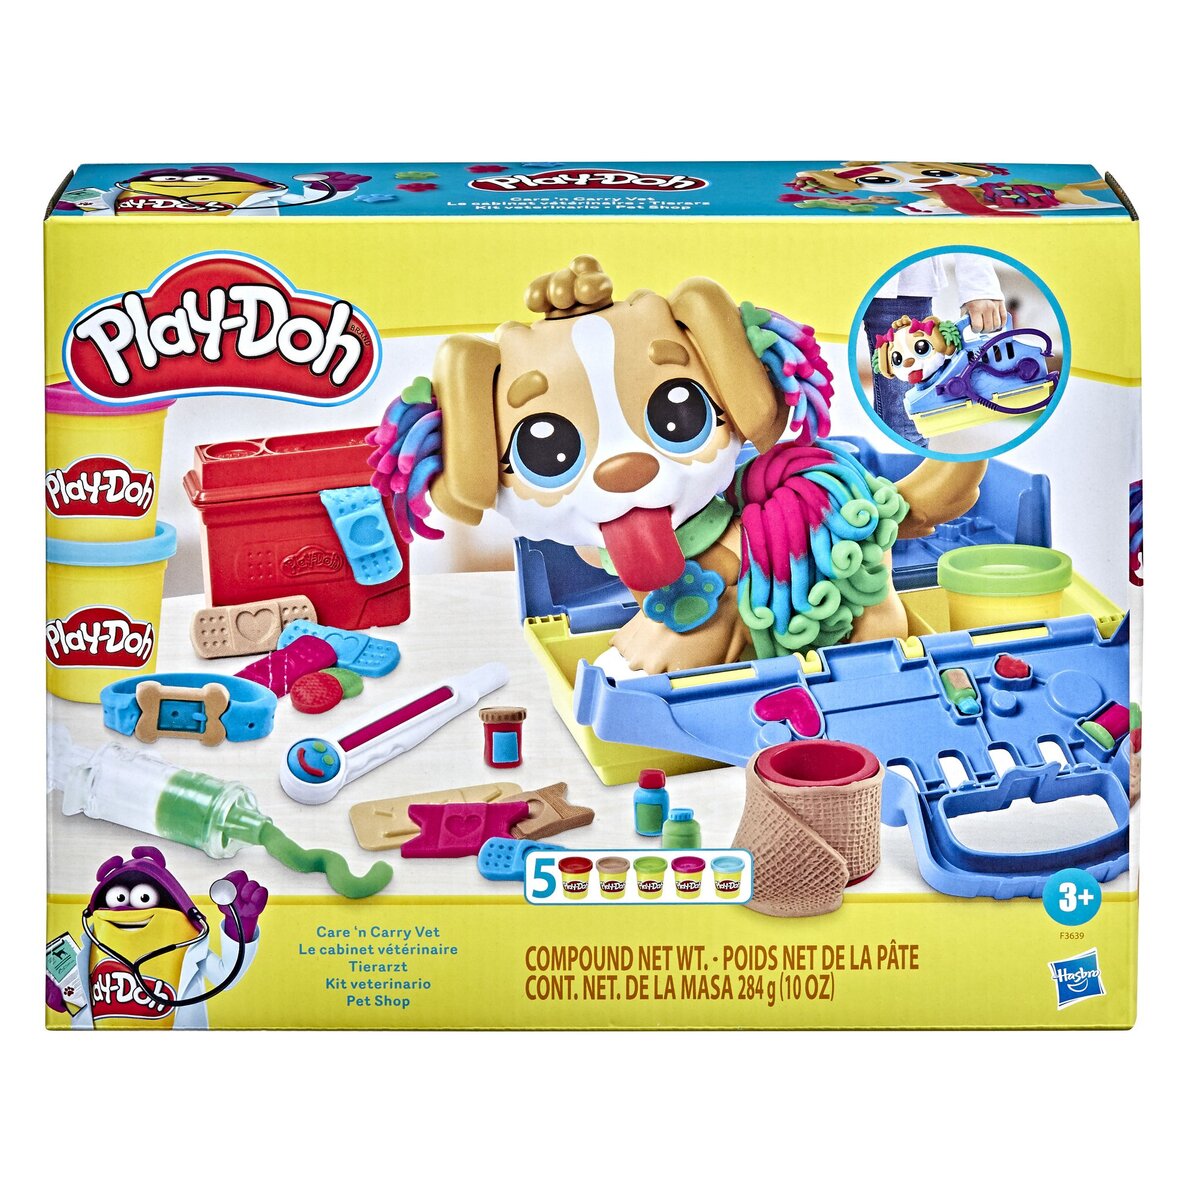 PLAY-DOH Play-Doh Mon super café, 20 accessoires et 8 pots de pâte à  modeler pas cher 